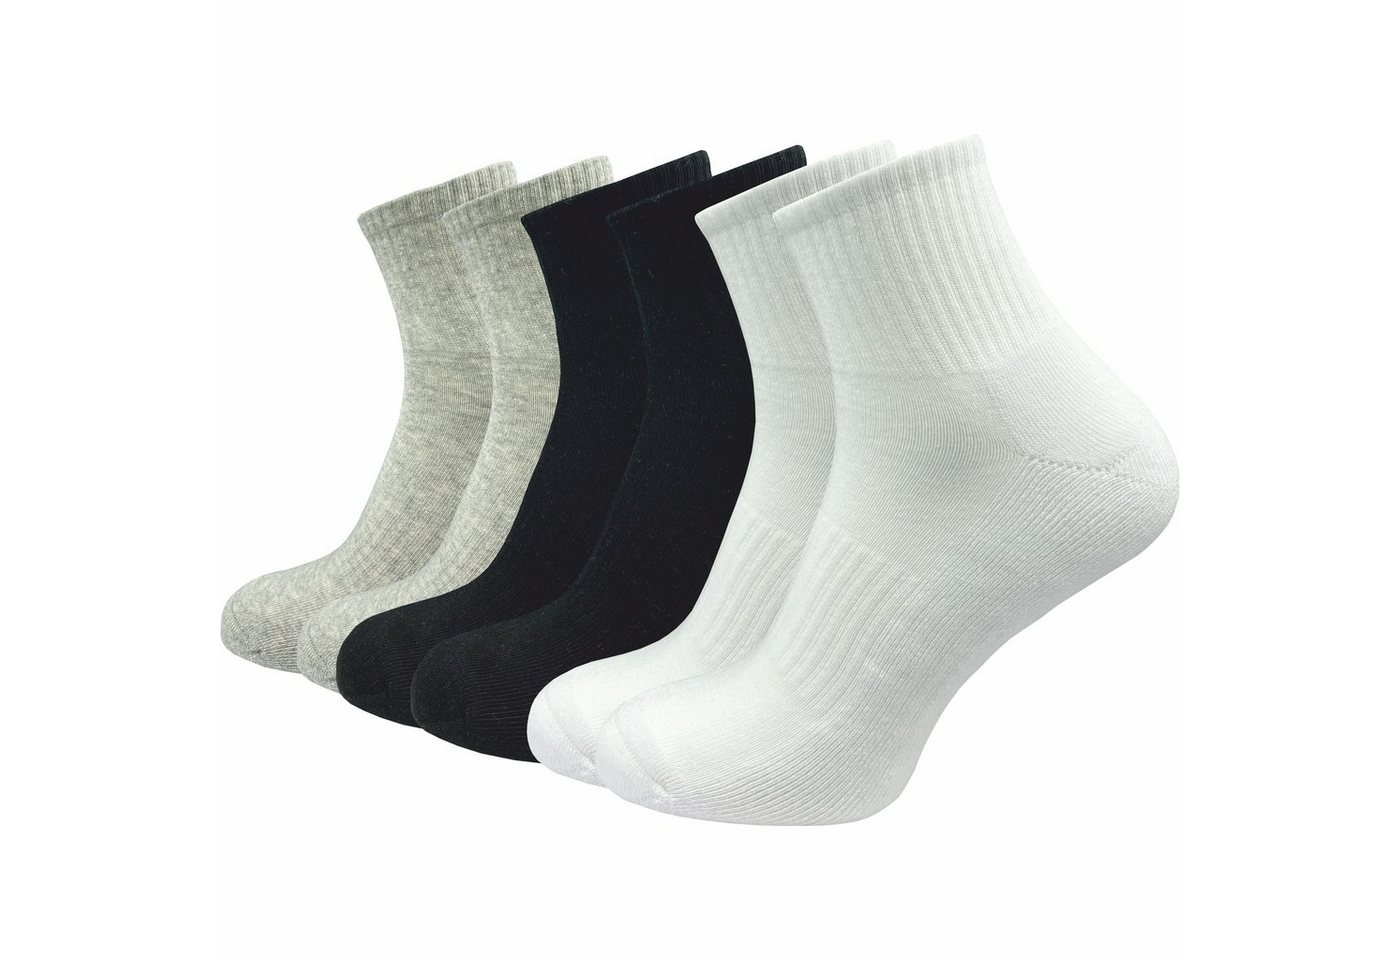 GAWILO Kurzsocken für Damen - Premium Socken für Sport & Freizeit - ohne drückende Naht (6 Paar) in weiß, schwarz & grau, leichte Plüschsohle für höchsten Tragekomfort von GAWILO